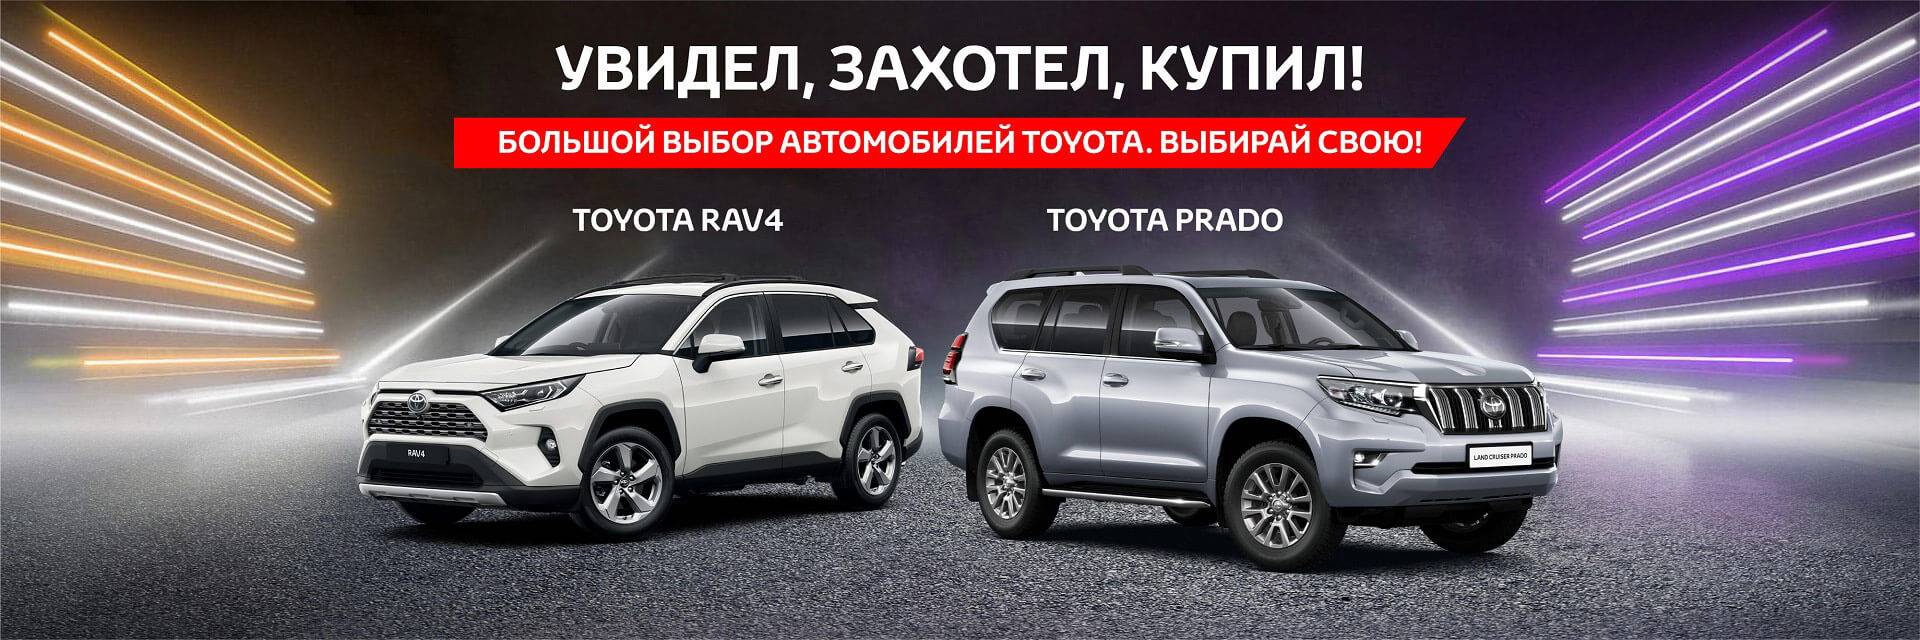 Большой выбор автомобилей Toyota. Выбирай свою!